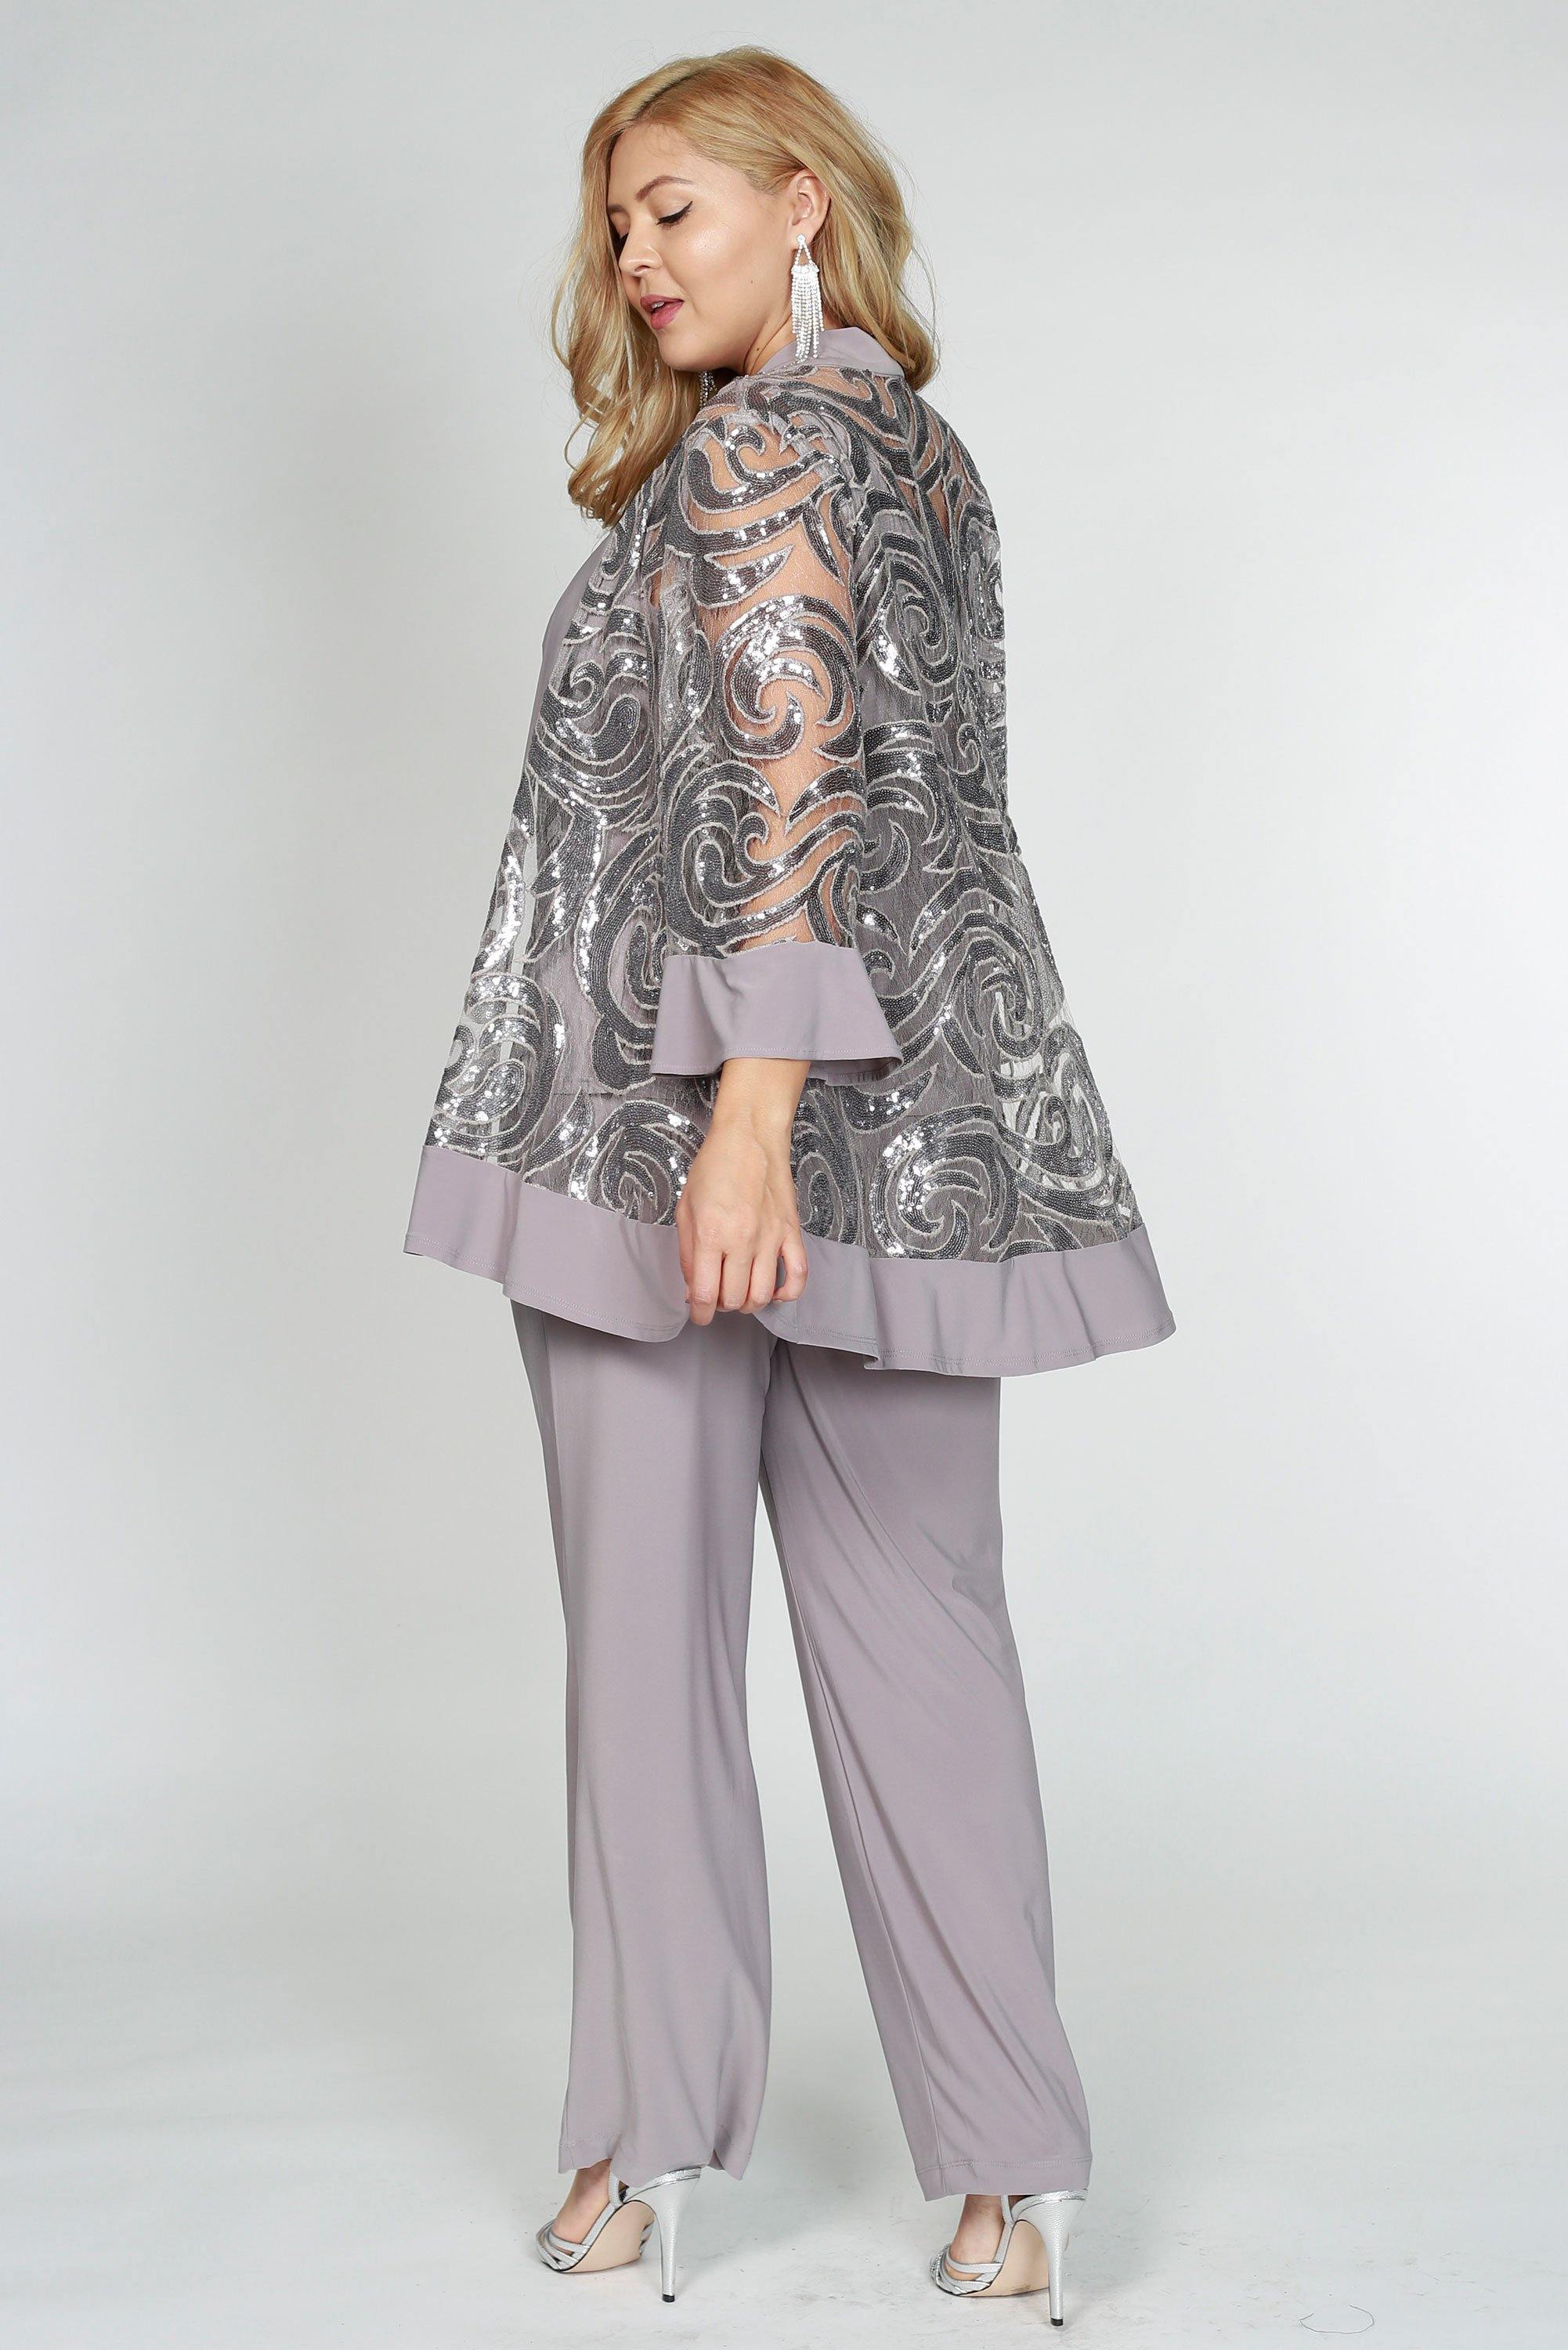 R&M Richards Formal Pantsuit Plus Size 2343W - The Dress Outlet